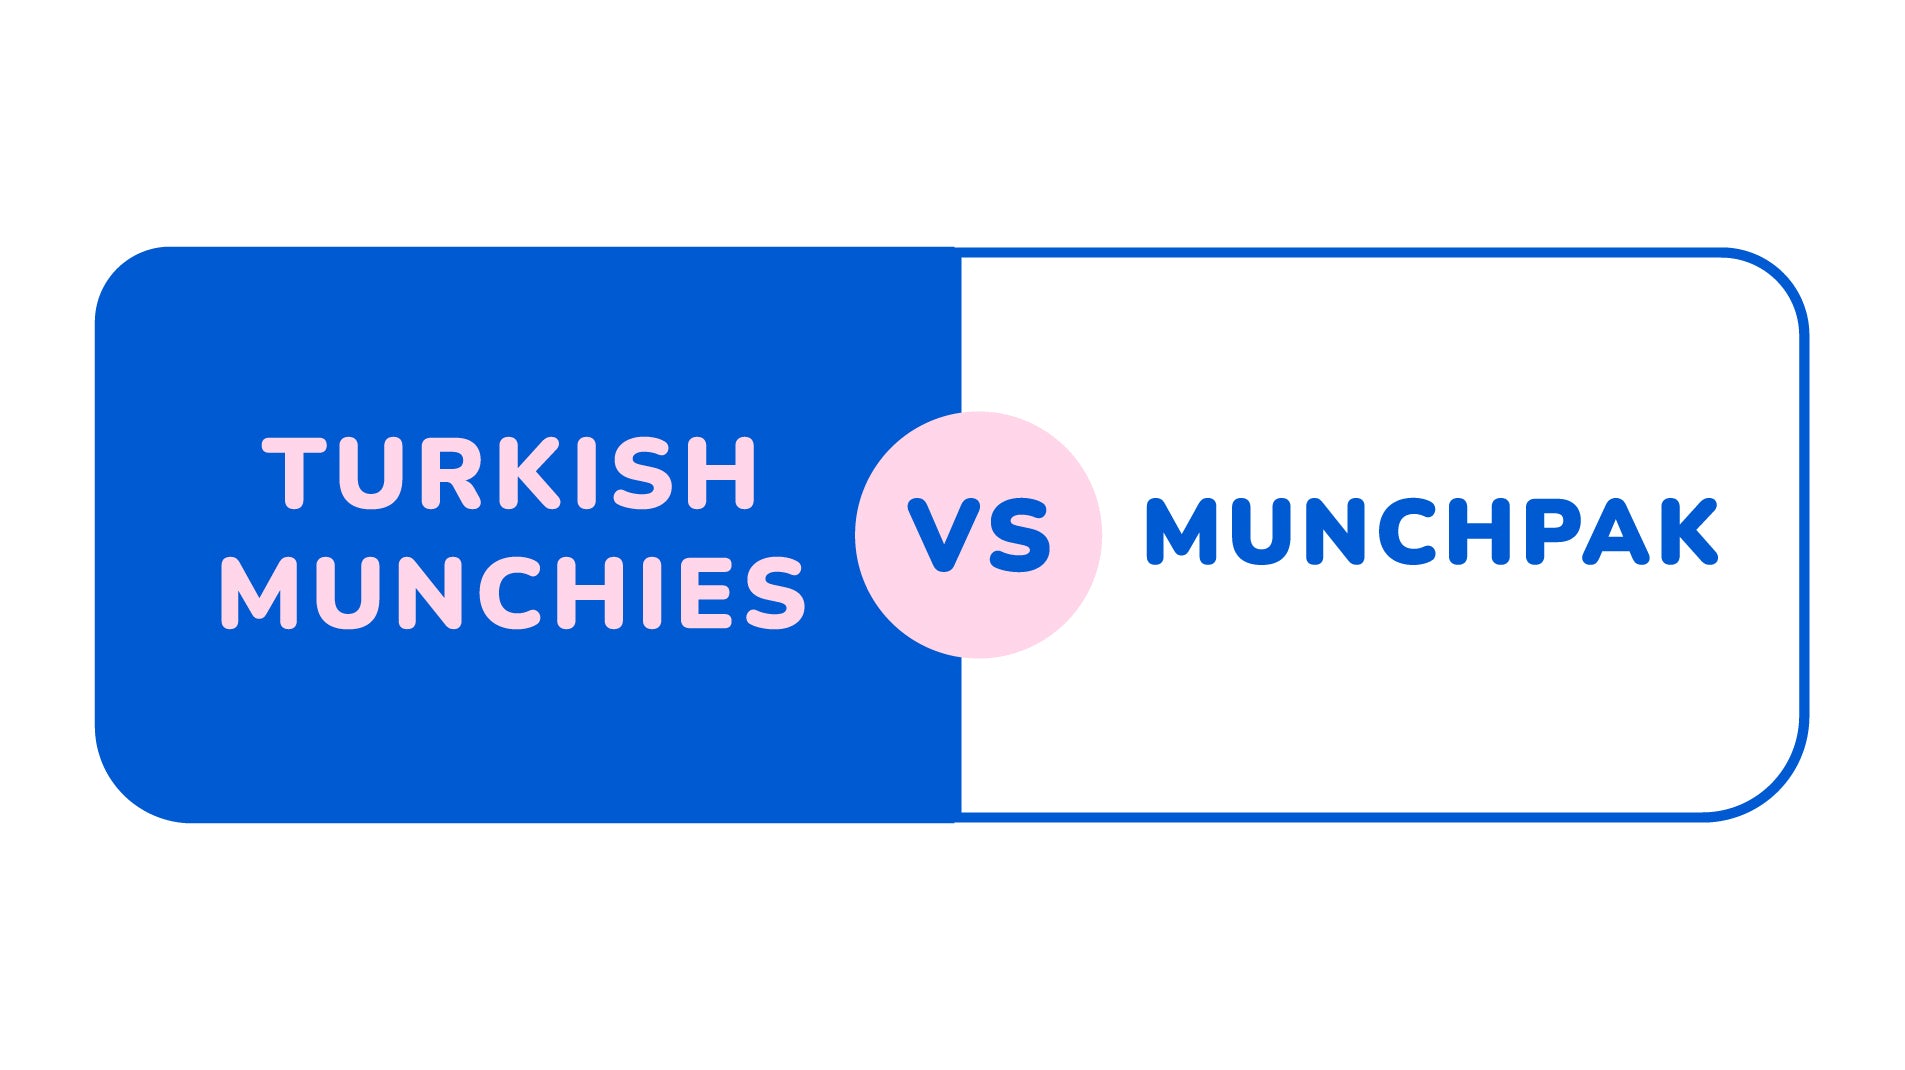 Turkish Munchies vs Munchpak